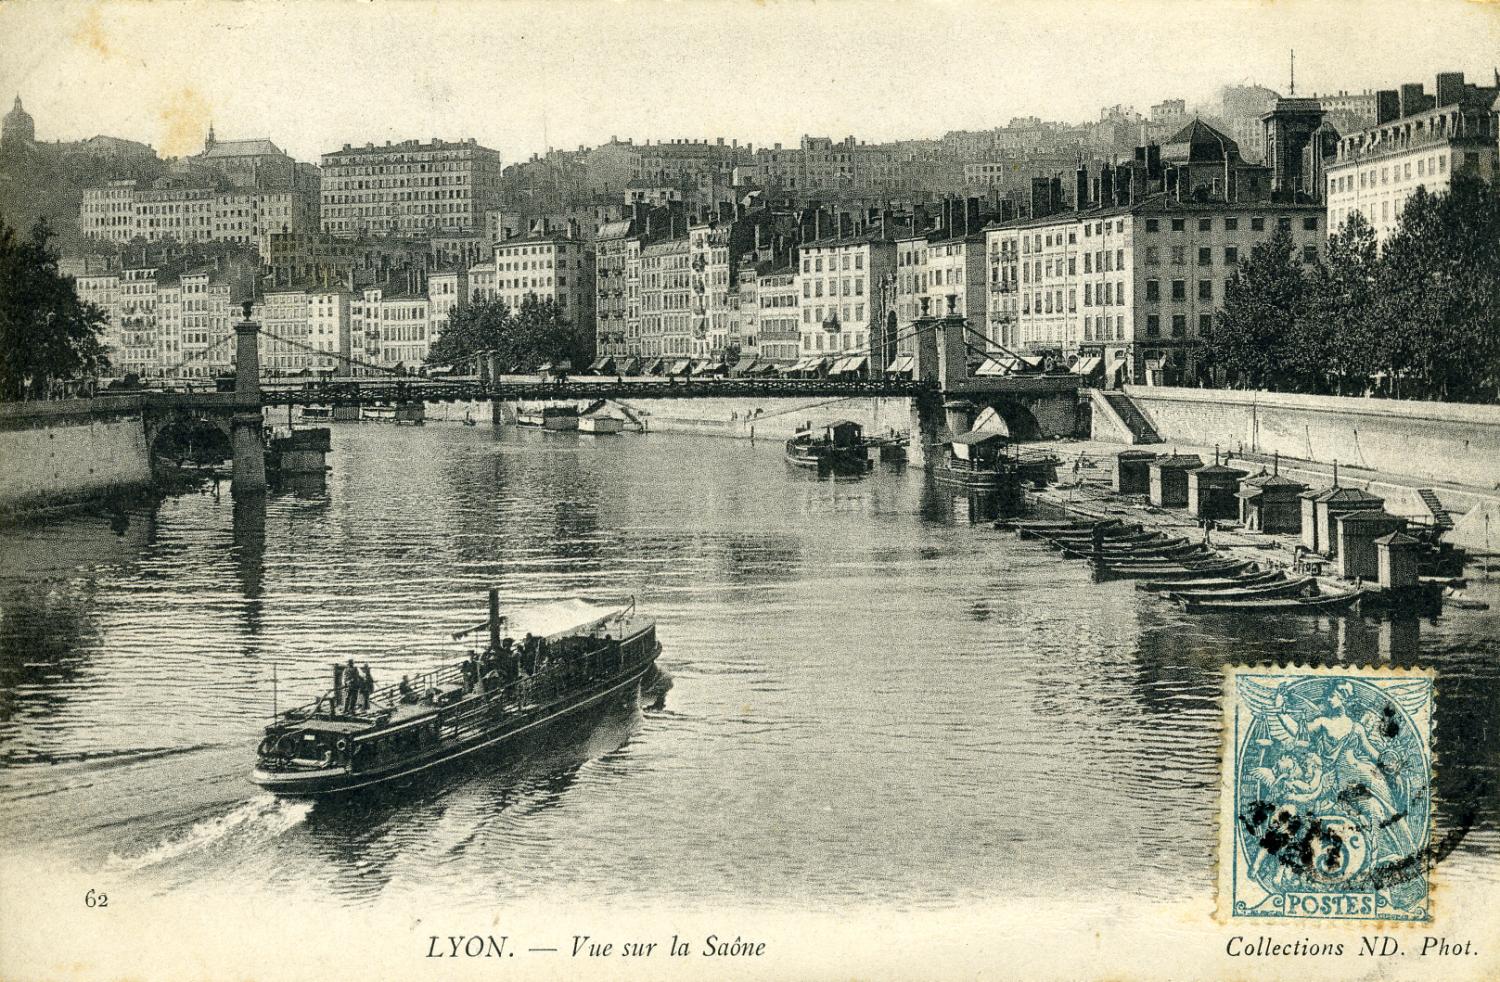 Lyon. - Vue sur la Saône